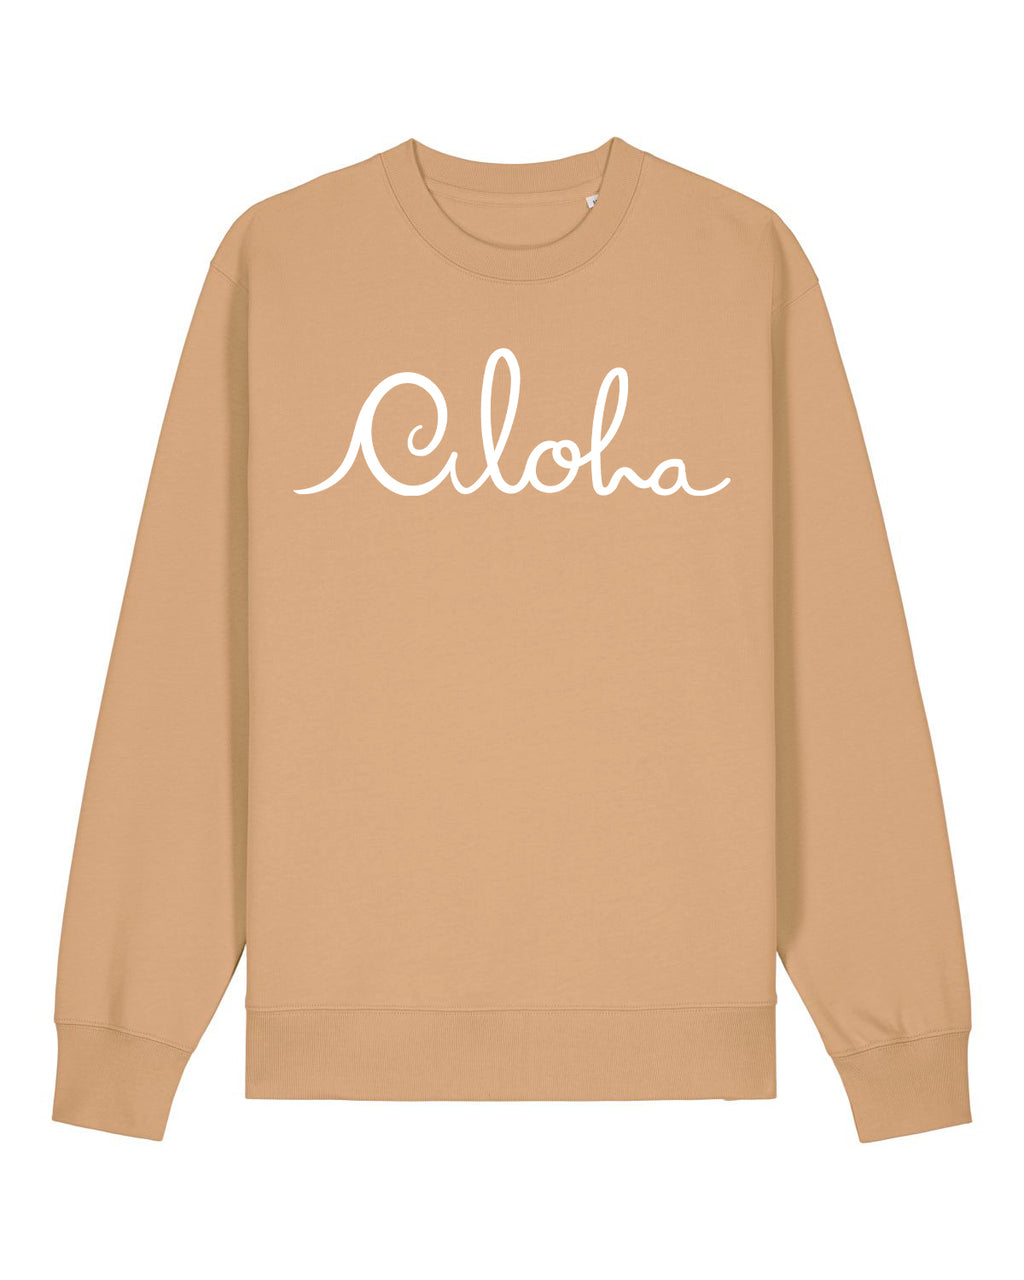 Aloha Sweater ~ Sandy